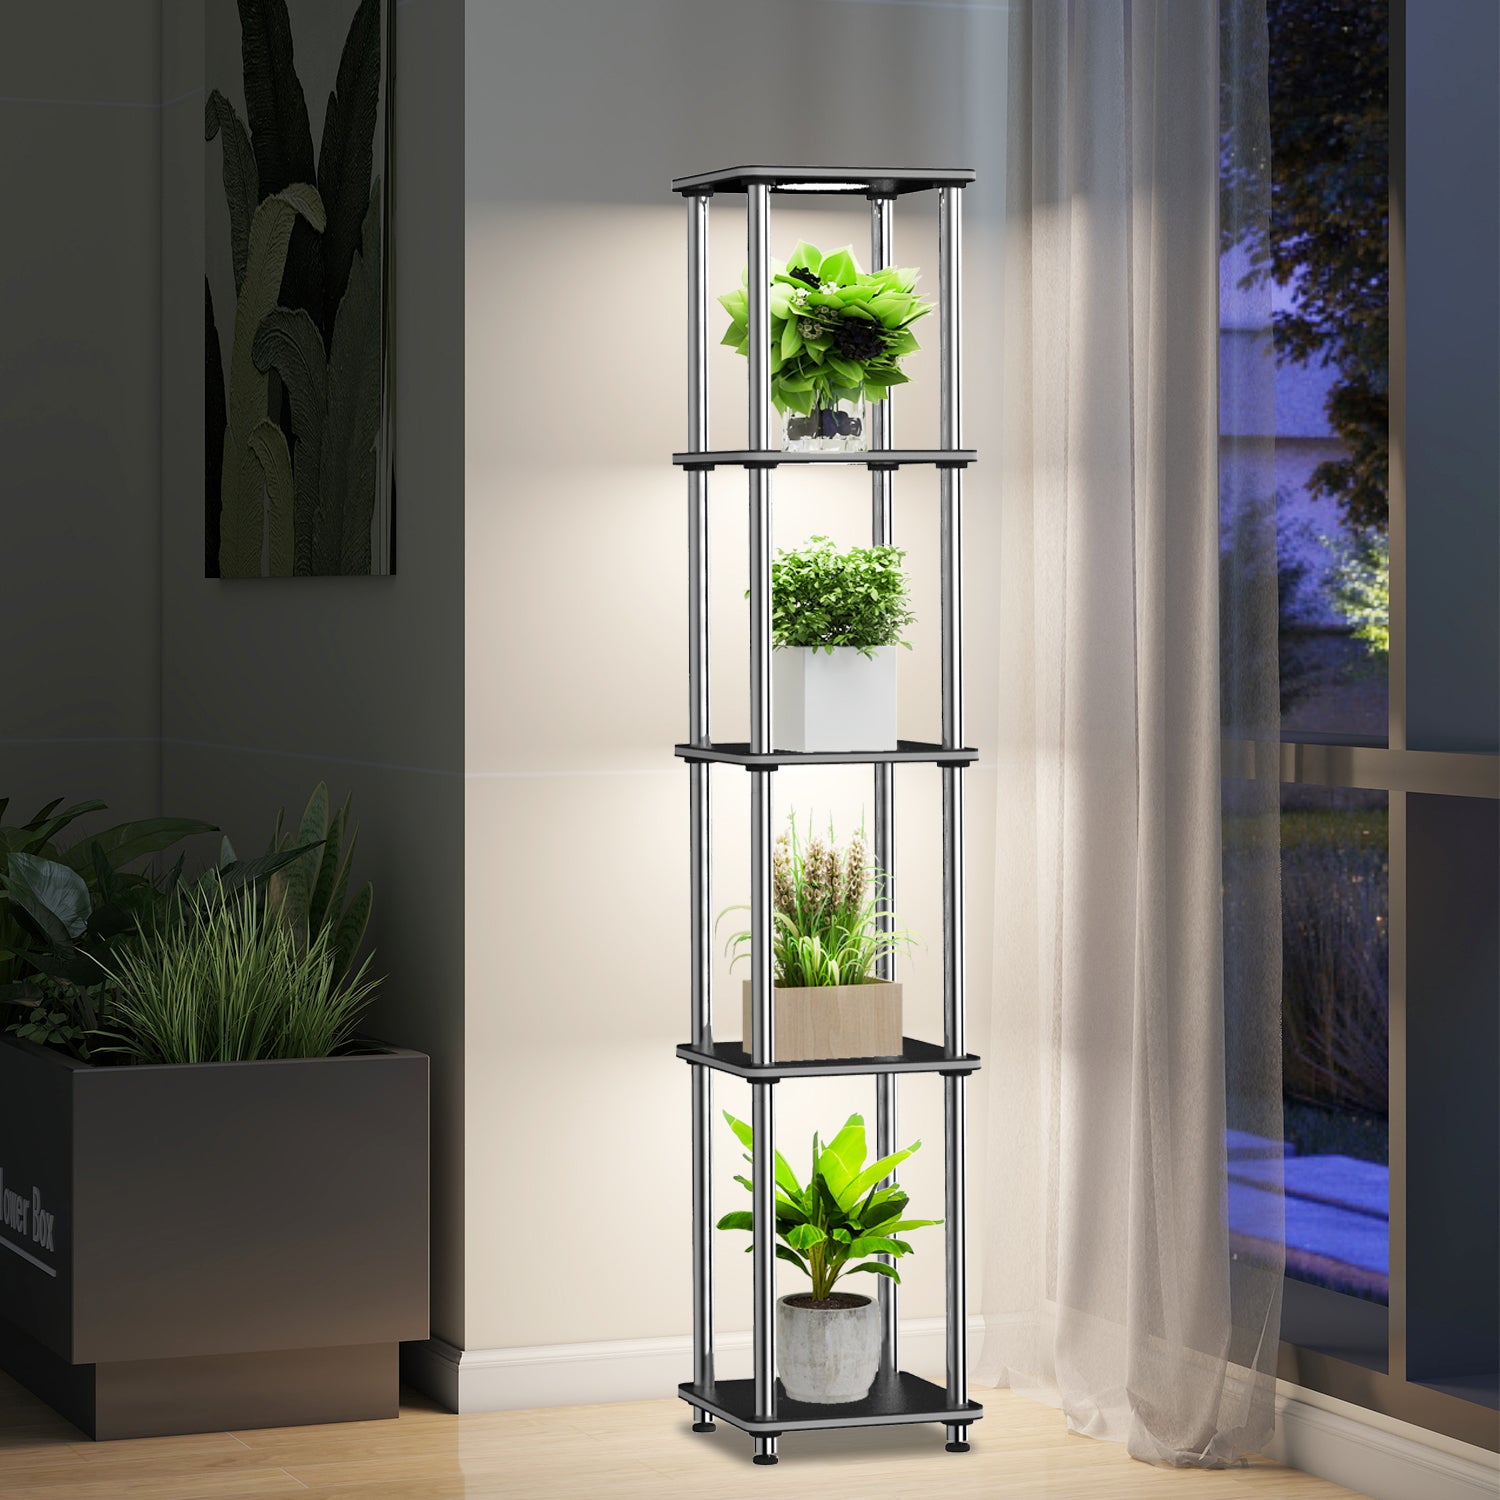 hopedamai floor lamp shelf with plant growth